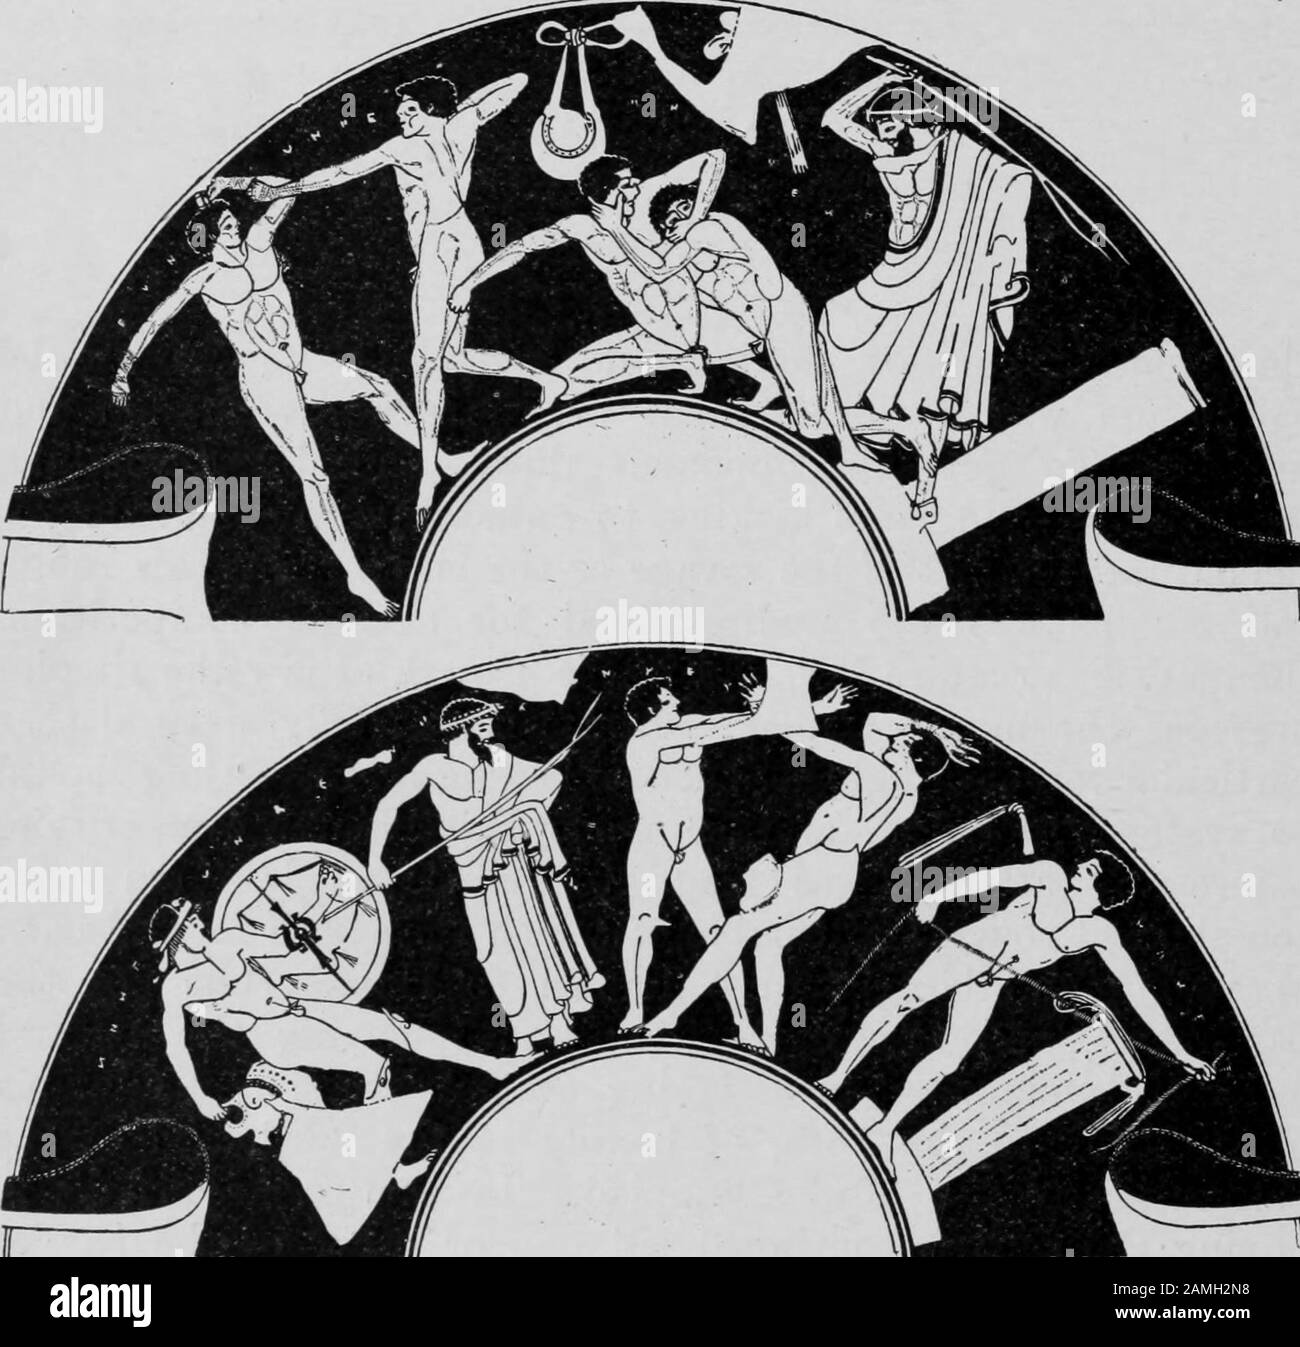 Bild mit griechischen Ringen und Boxen aus dem Buch "Greek Athletic Sports and Festivals" des Autors E. Norman Gardiner, herausgegeben von Macmillan und Co, 1910. Kostenloses Internetarchiv. () Stockfoto